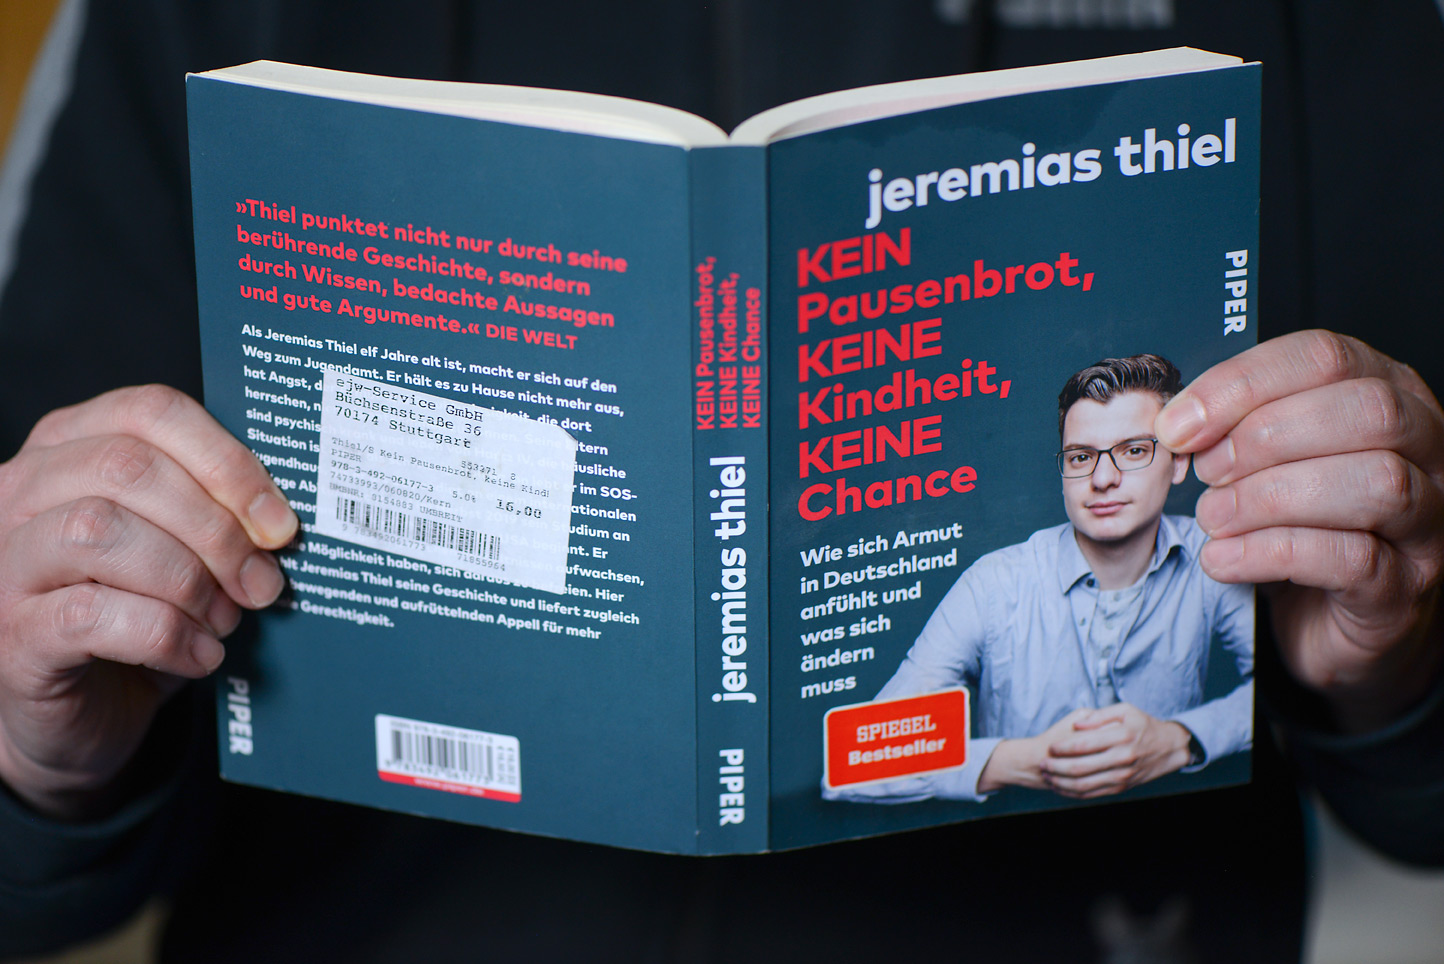 Auf dem Foto zu sehen: Buchcover "Kein Pausenbrot Keine Kindheit Keine Chance" von Jeremias Thiel